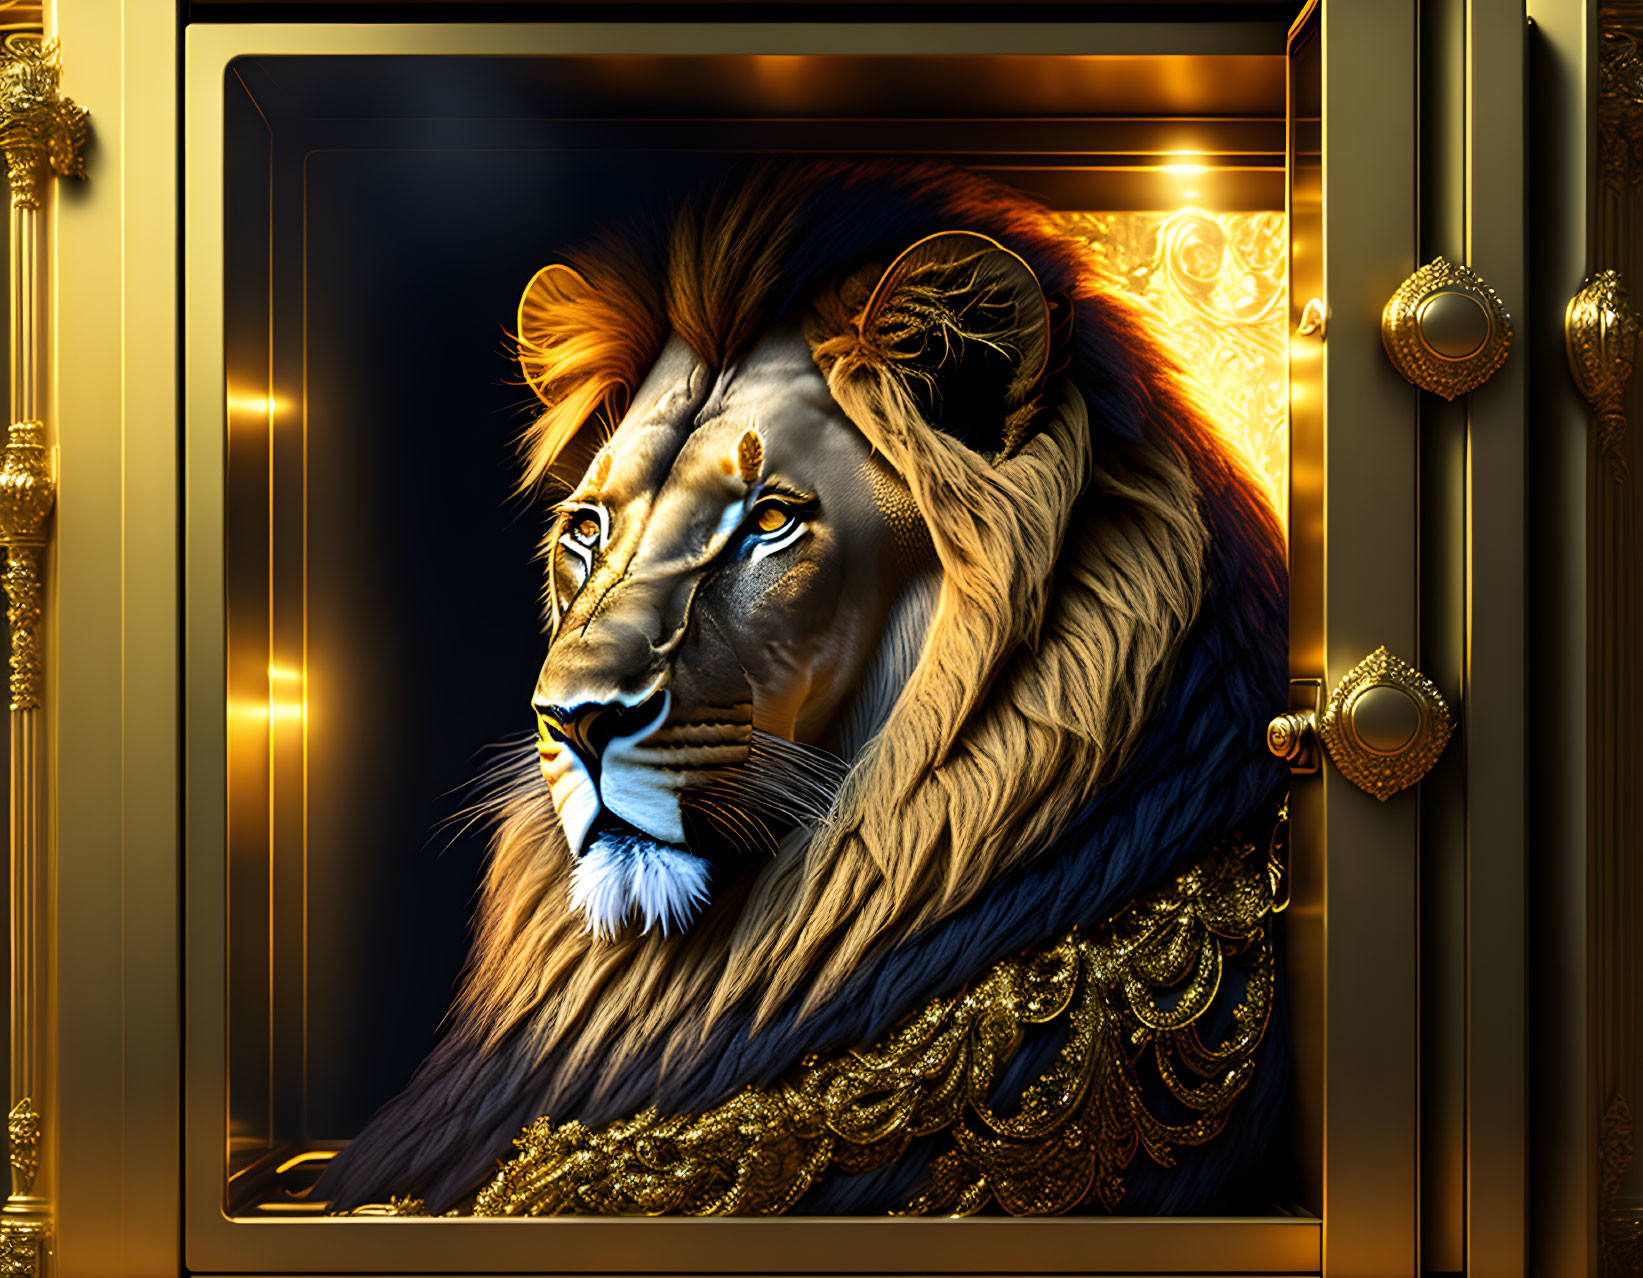 Majestic lion digital artwork with gold-adorned mane on black background